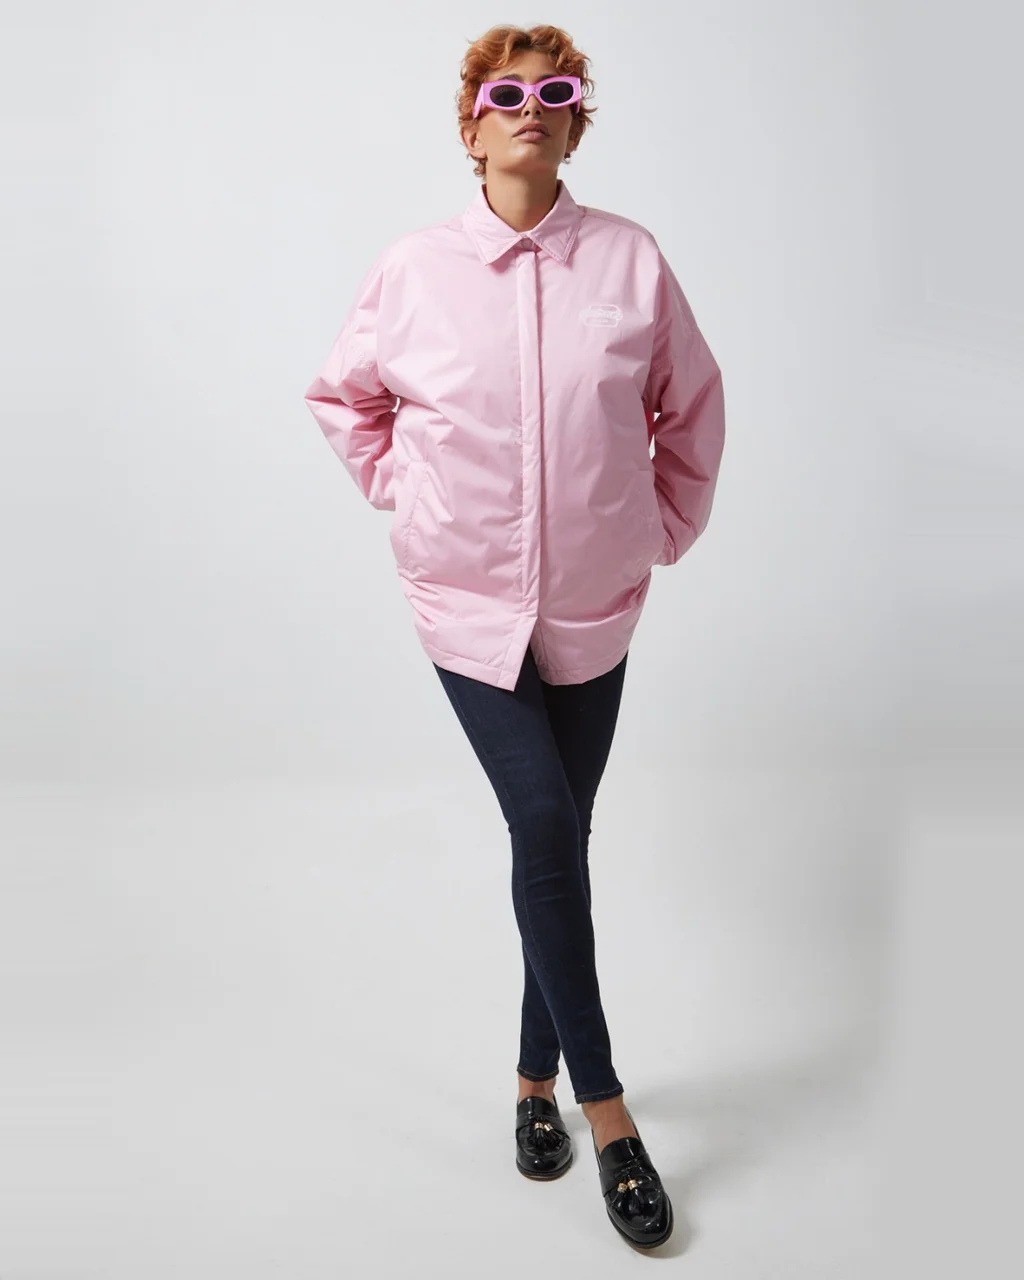 куртка рубашка женская розовая бренд Гертруа и Гастон Франция